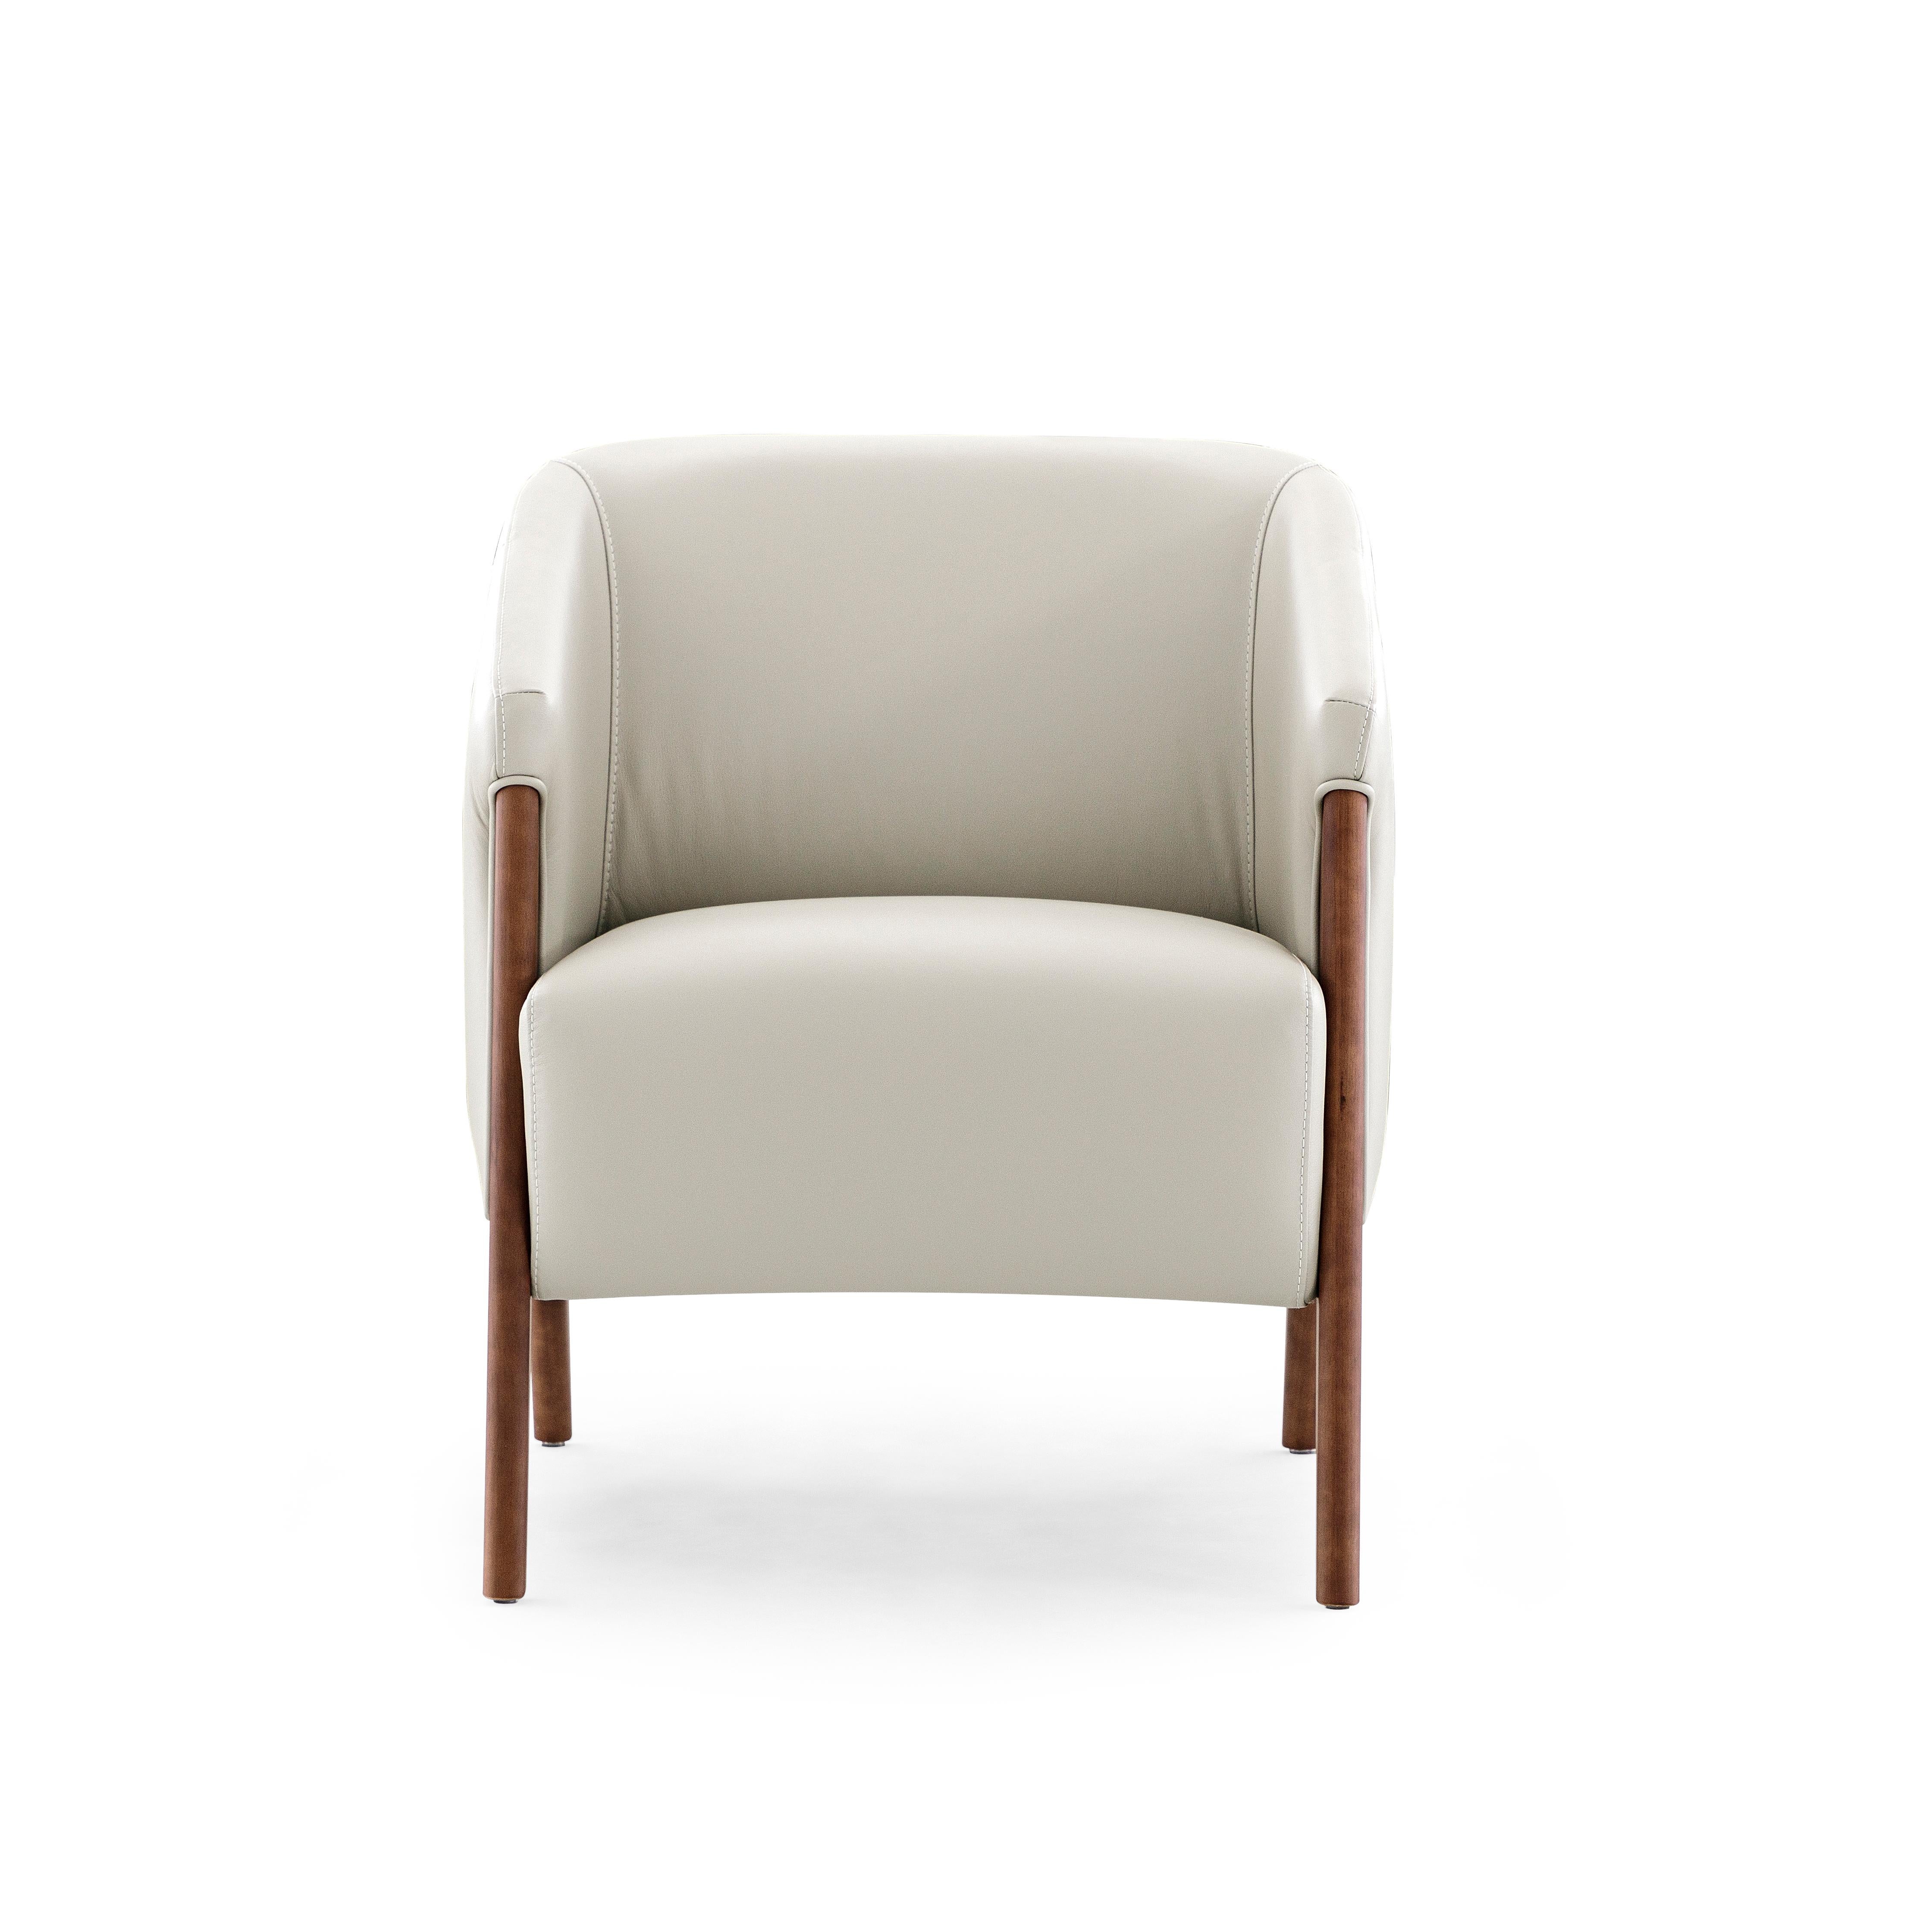 Der Sessel Abra ist mit seinem schönen weißen Lederbezug und dem Gestell aus Walnussholz eine einladende Ergänzung für jeden Raum in Ihrer Einrichtung. Dieser Sessel wurde von unserem fantastischen Team aus Architekten und Designern von Uultis